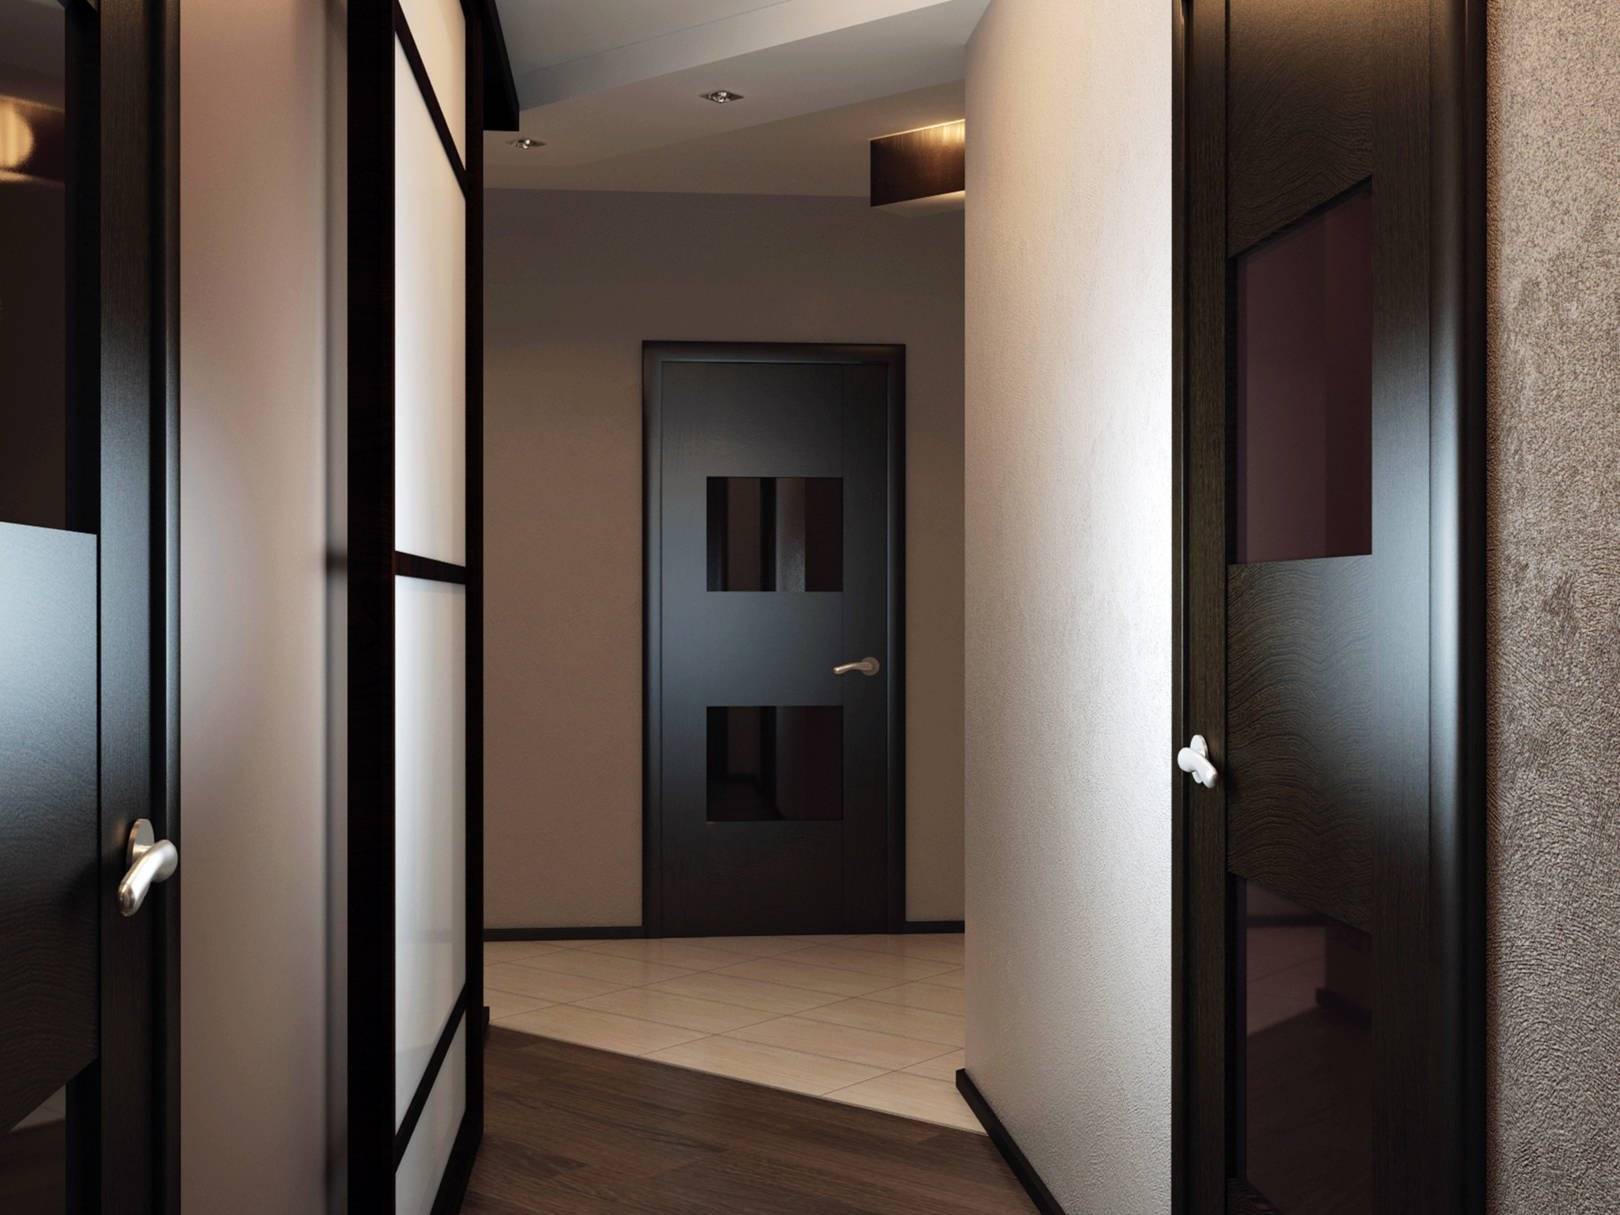 Темные двери в интерьере, фото, как можно с ними сочетать светлый пол